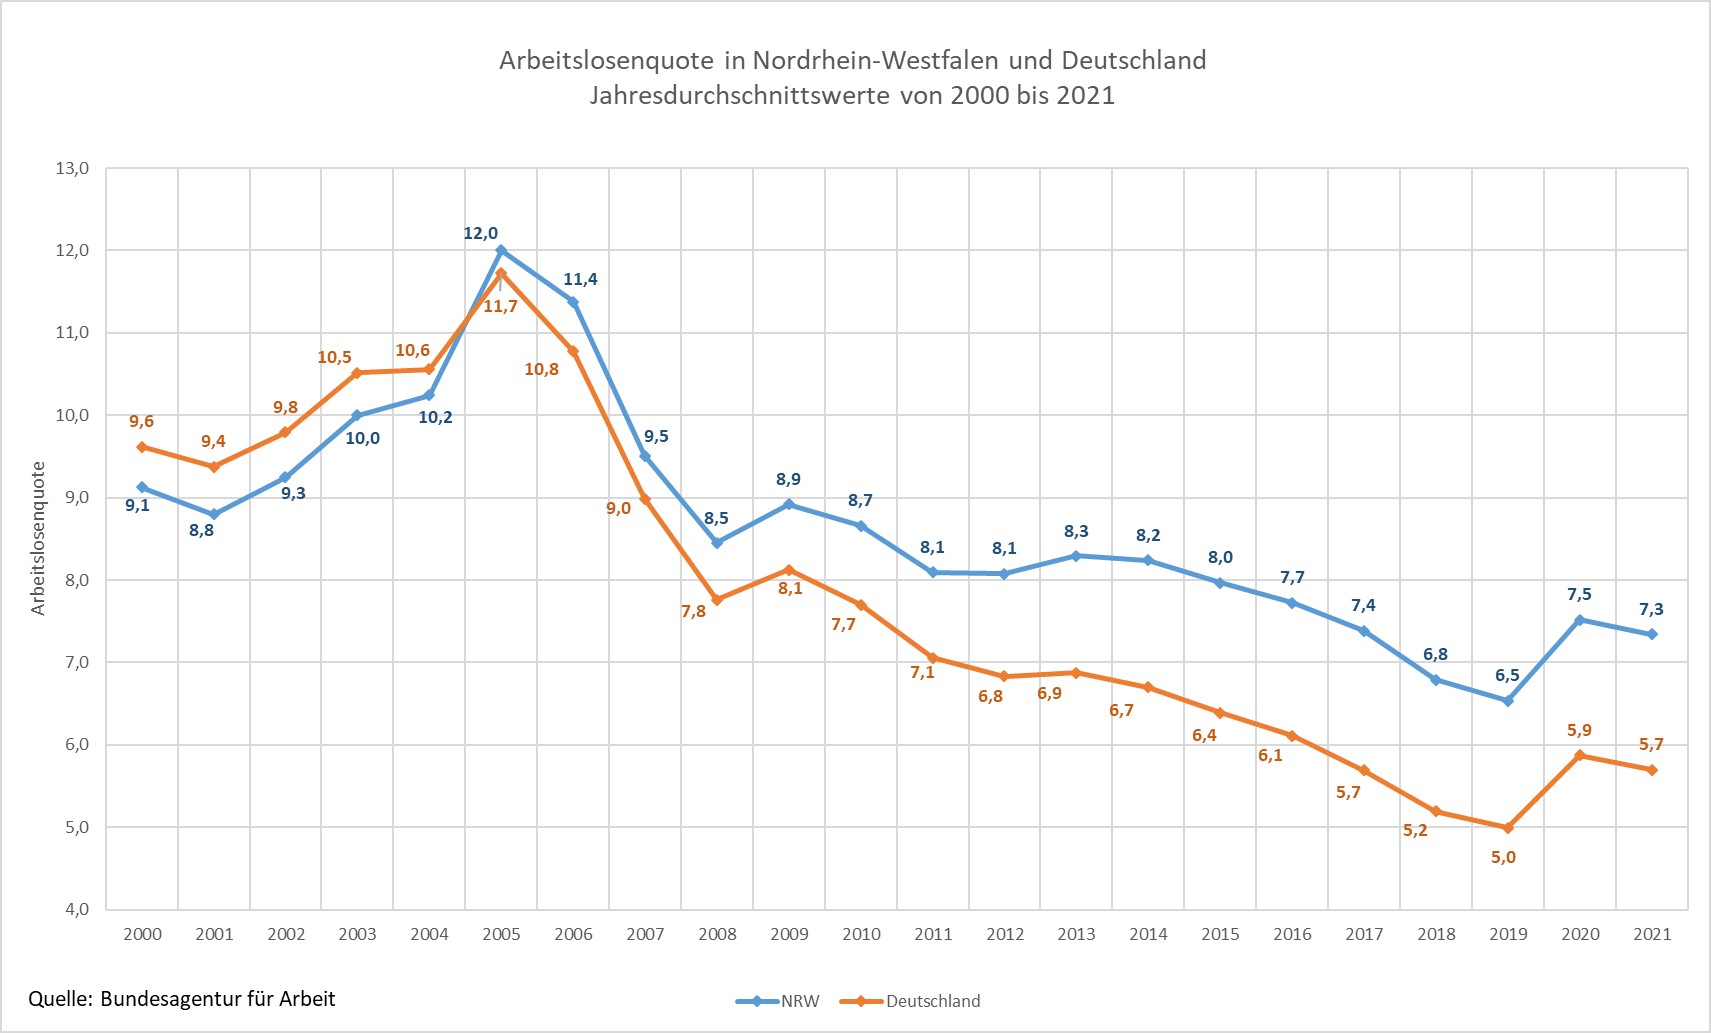 Arbeitslosenquote in NRW und Deutschland 2000 bis 2020, Jahresdurchschnittswerte